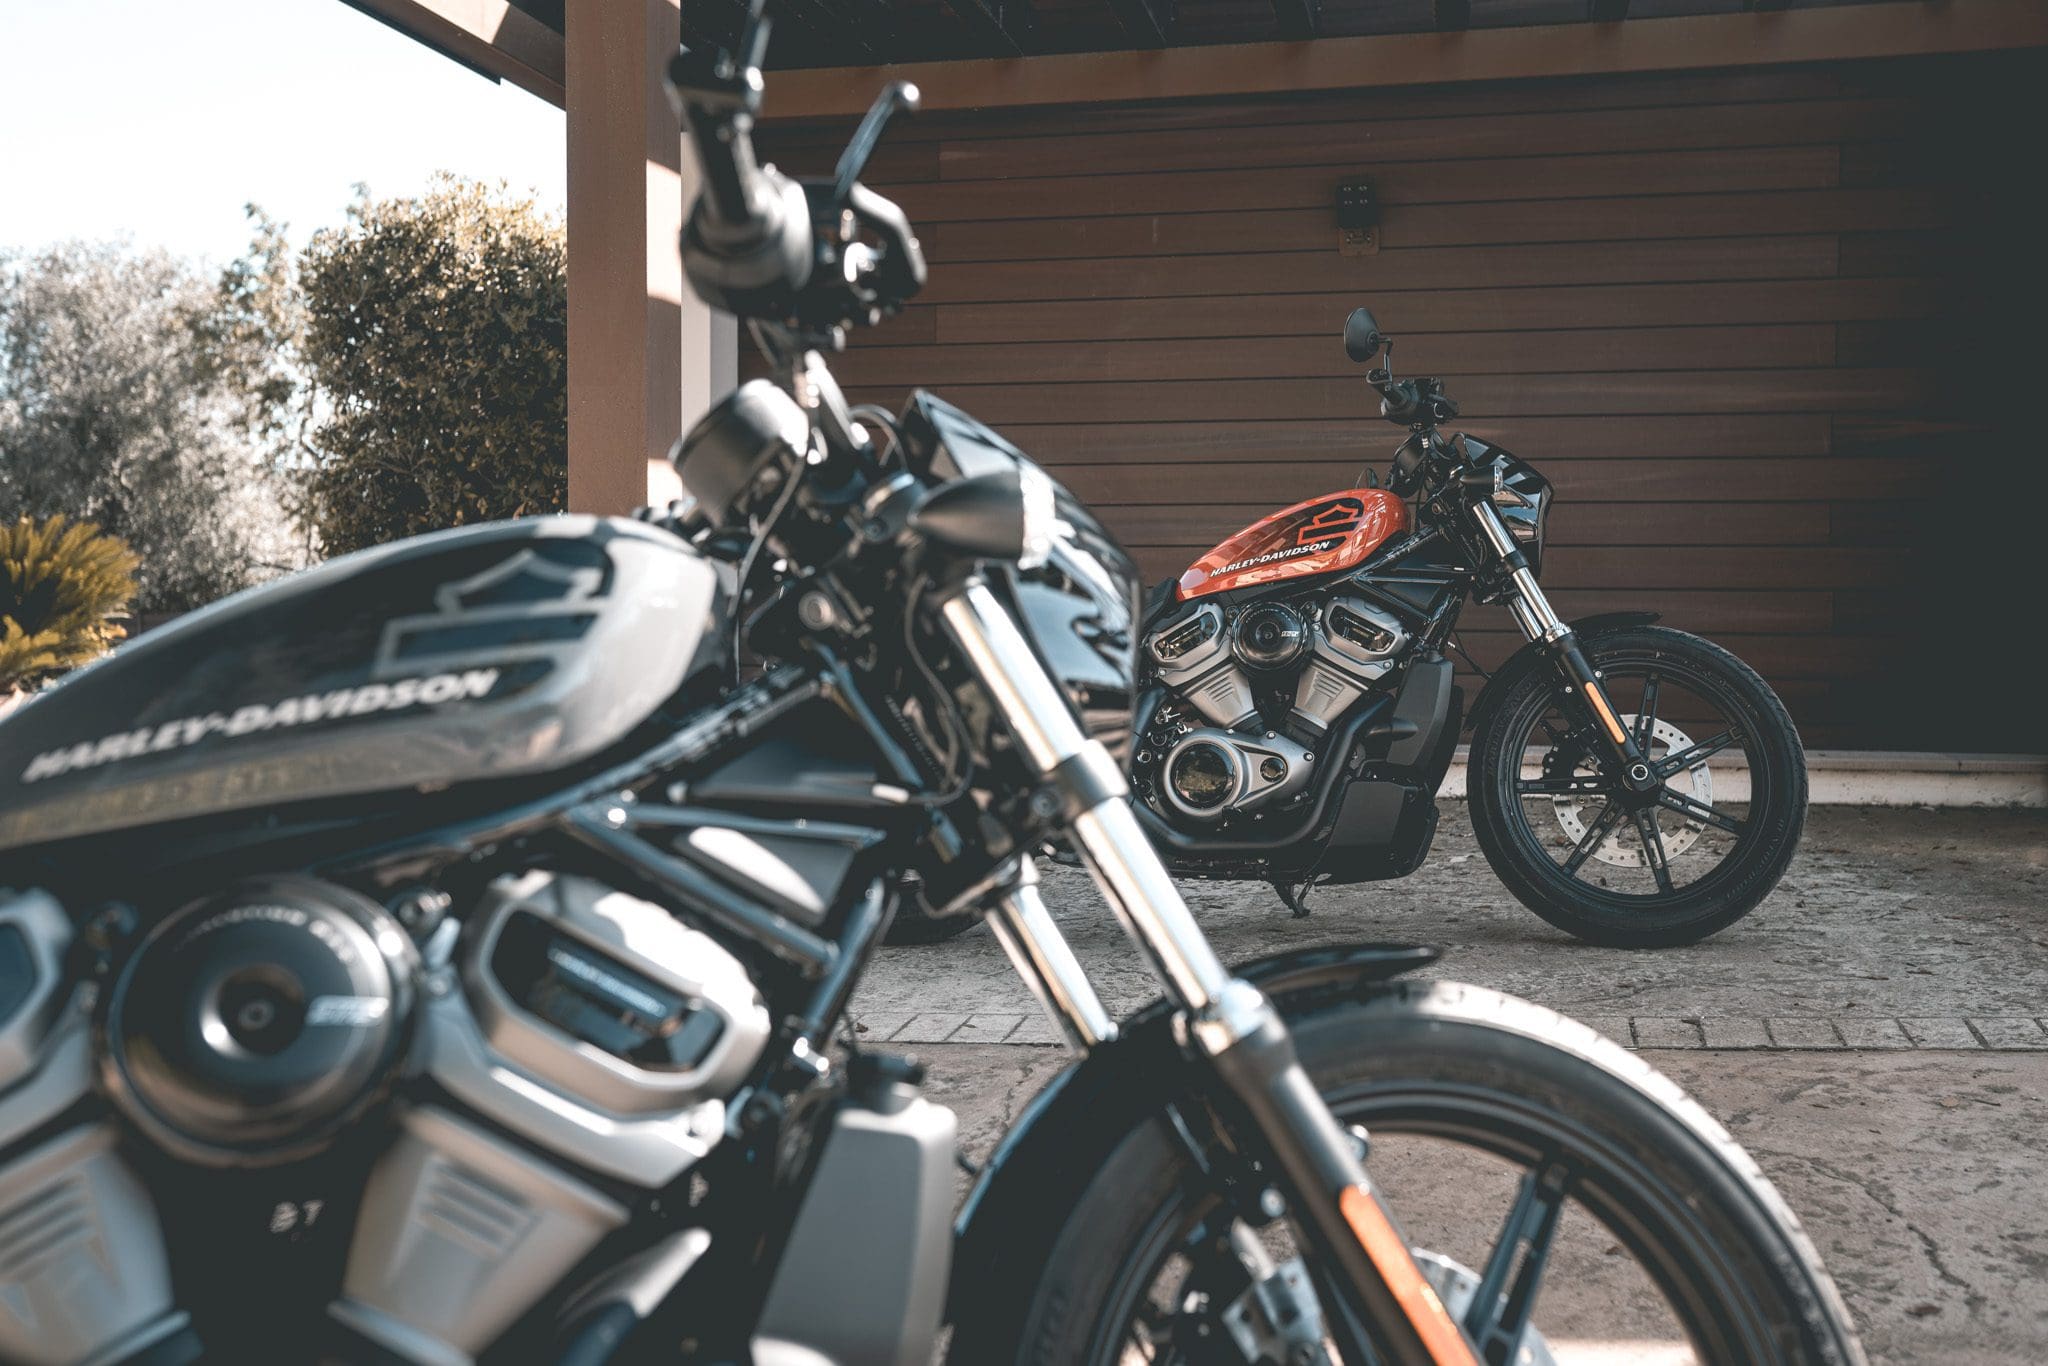 2022 Harley Davidson modellen, We voelen de nieuwe 2022 Harley-Davidson modellen letterlijk aan de tand(wielen)